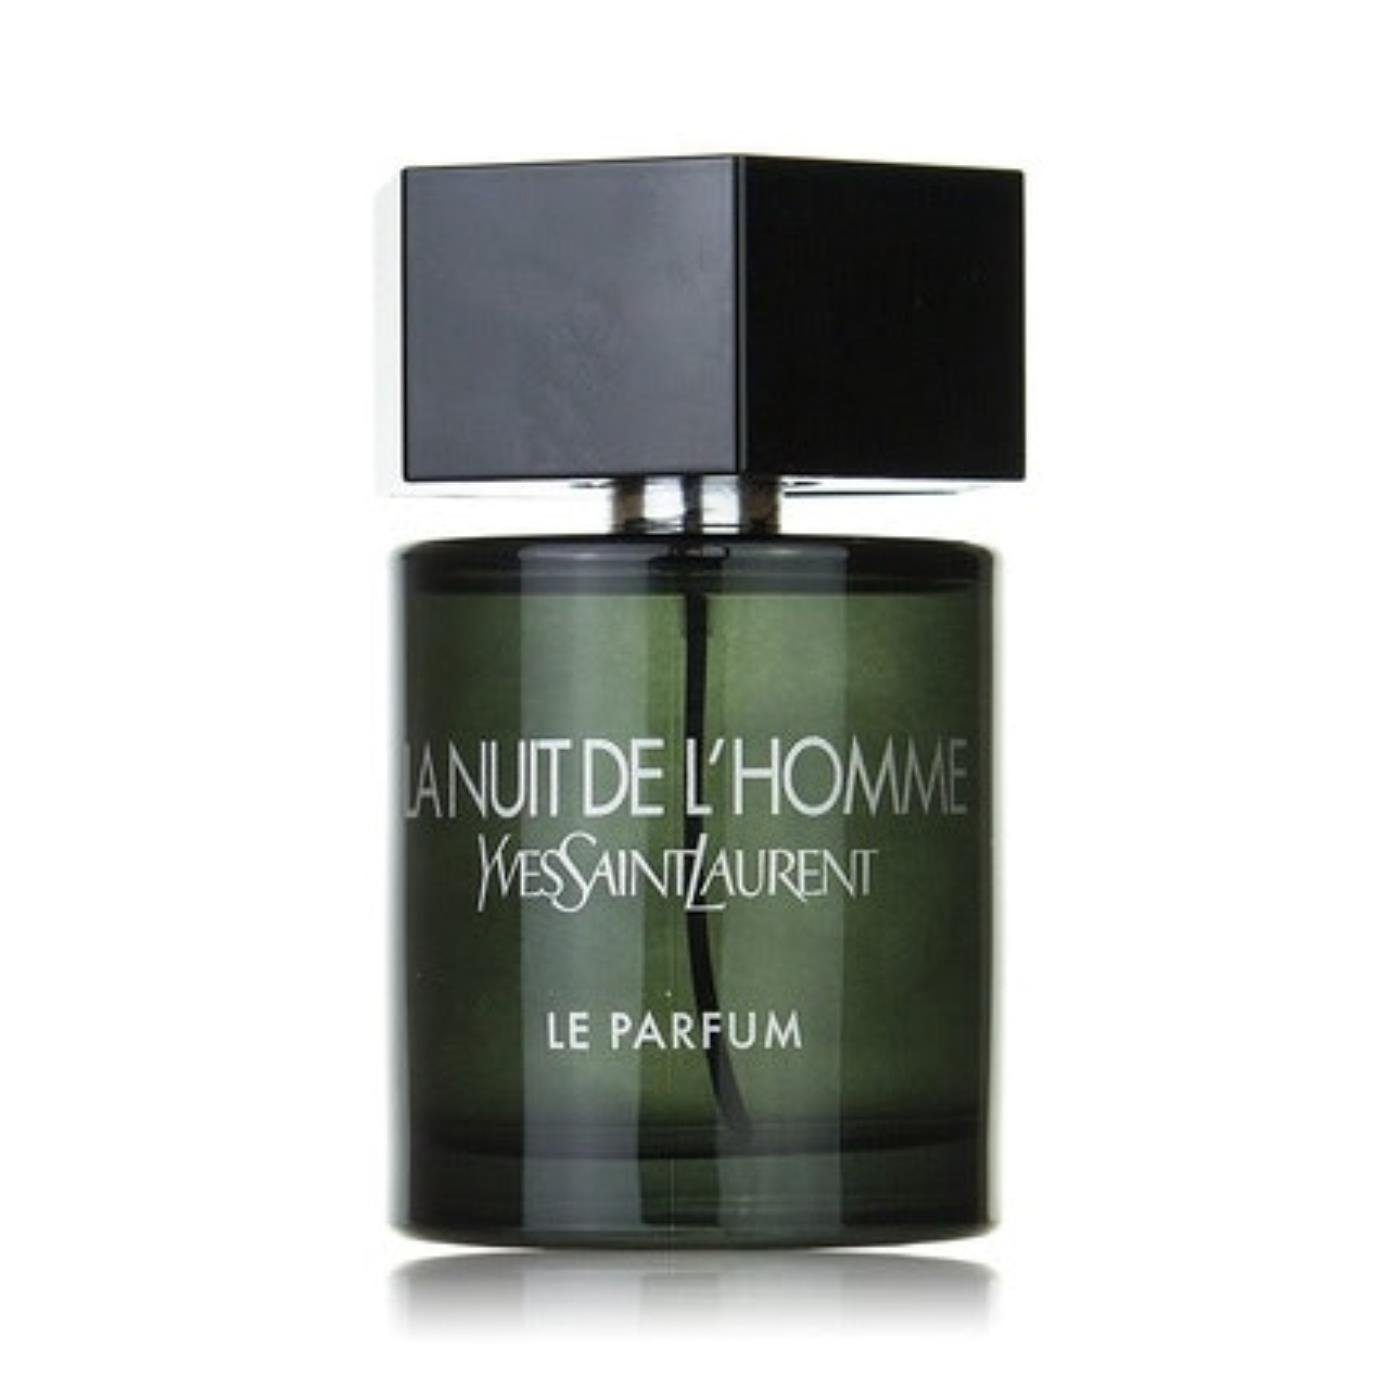 YVES SAINT de Parfum Yves Saint Parfum L'Homme LAURENT Eau Nuit Laurent Le de La